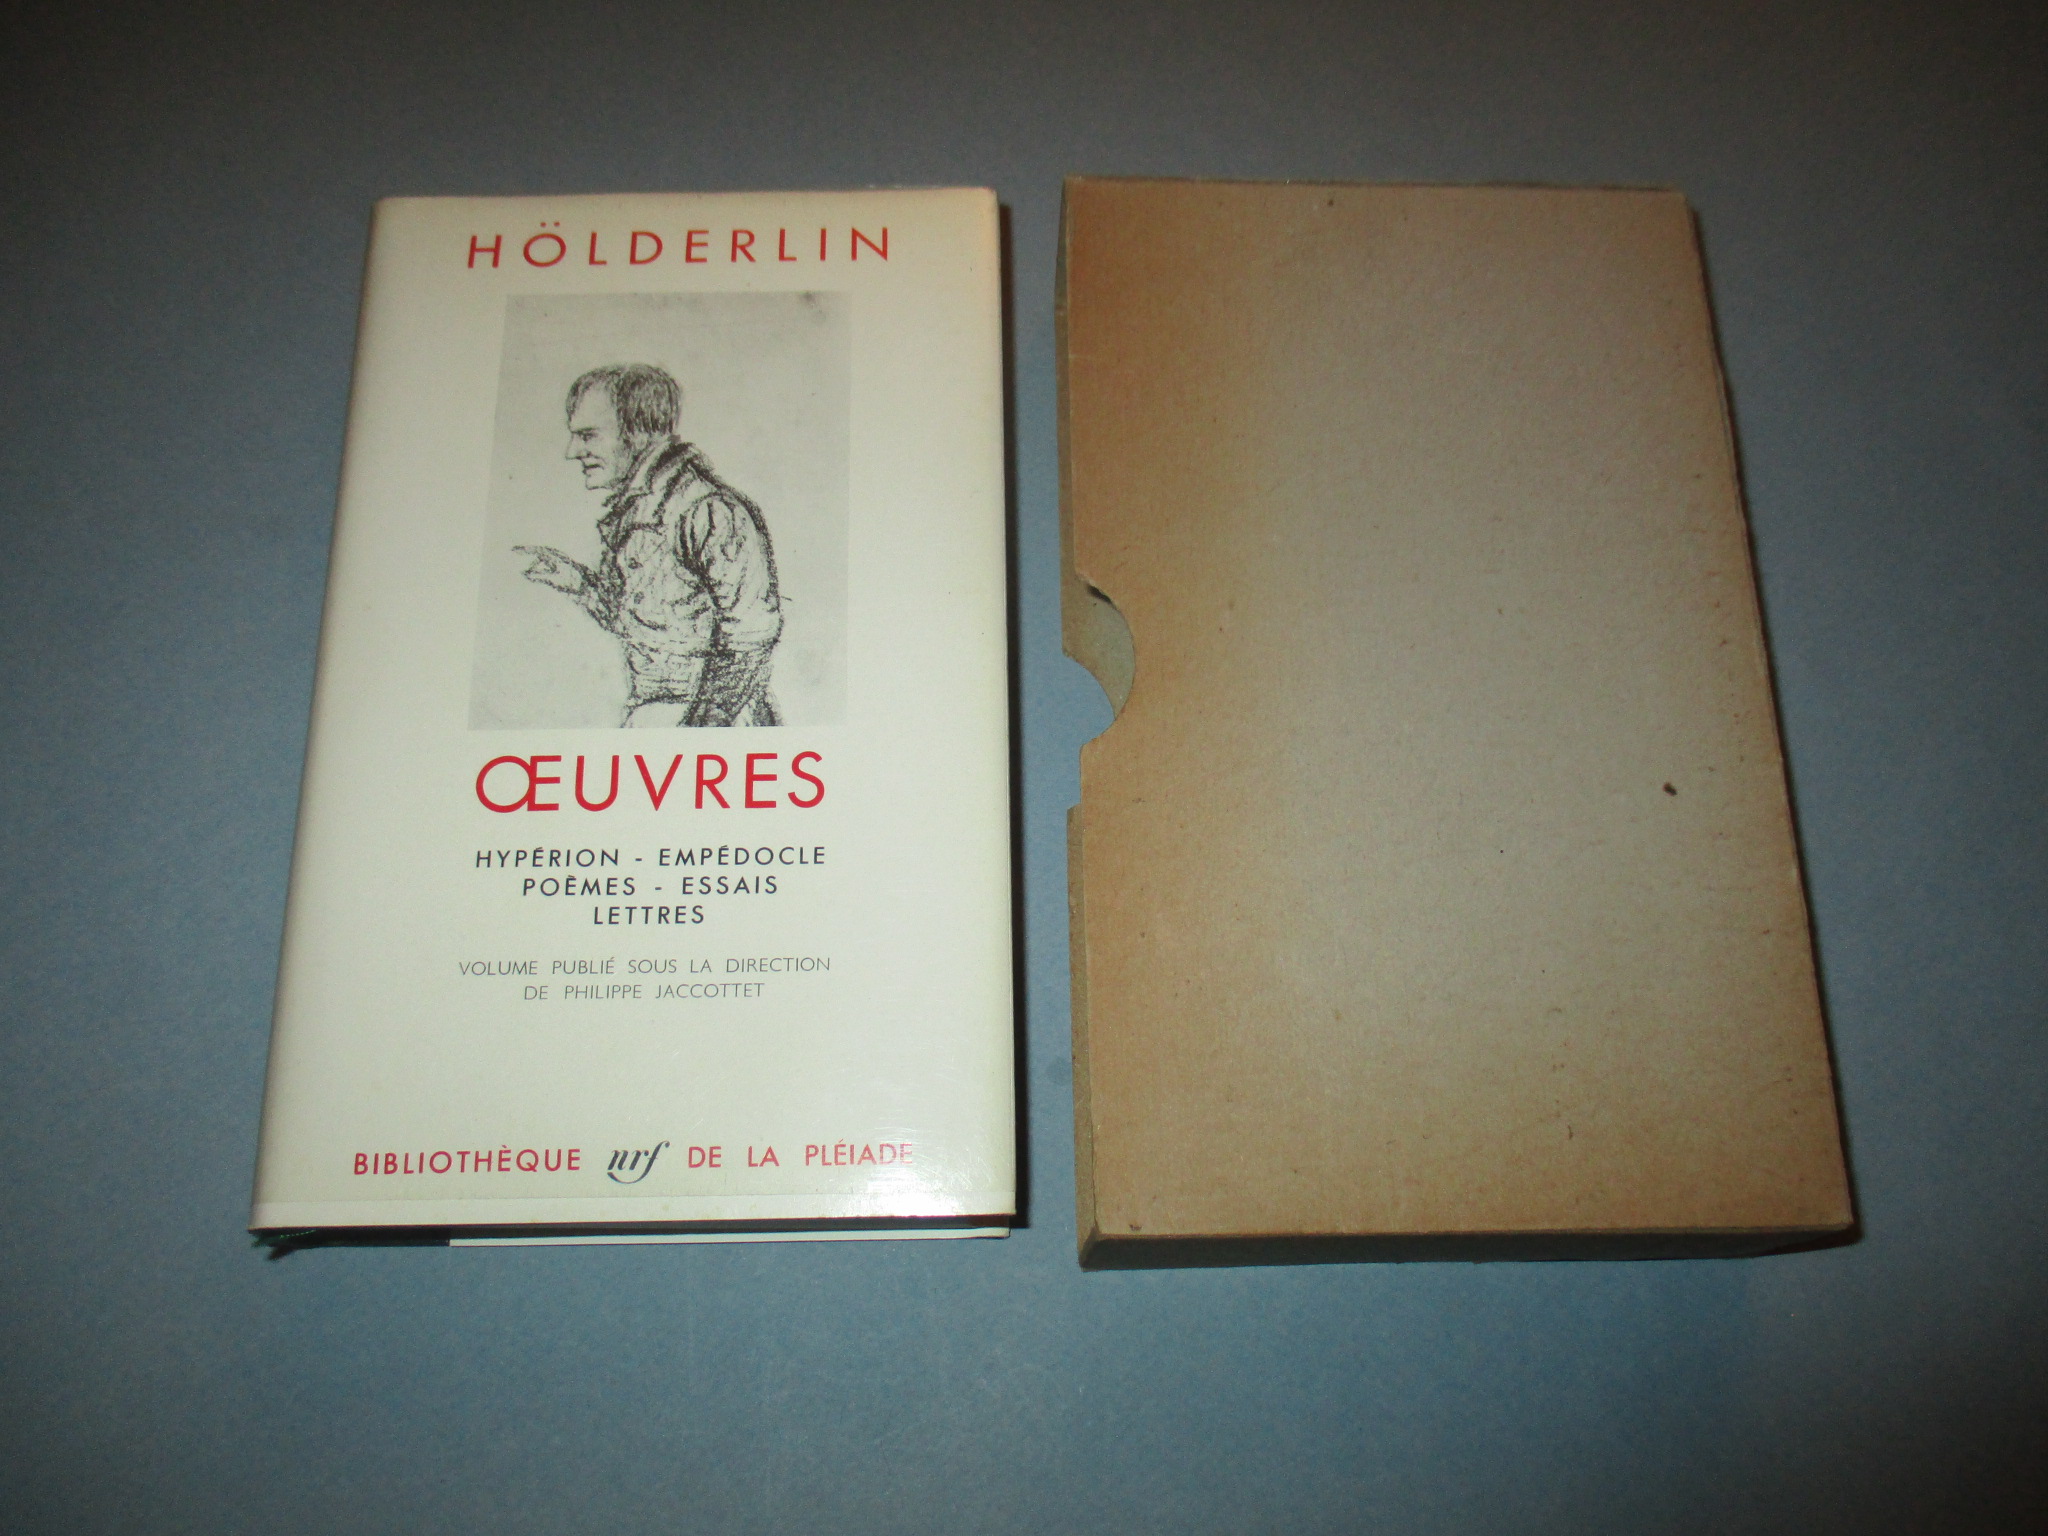 Oeuvres, Hölderlin, Hypérion Empédocle Poèmes Essais Lettres, La Pléiade 1967